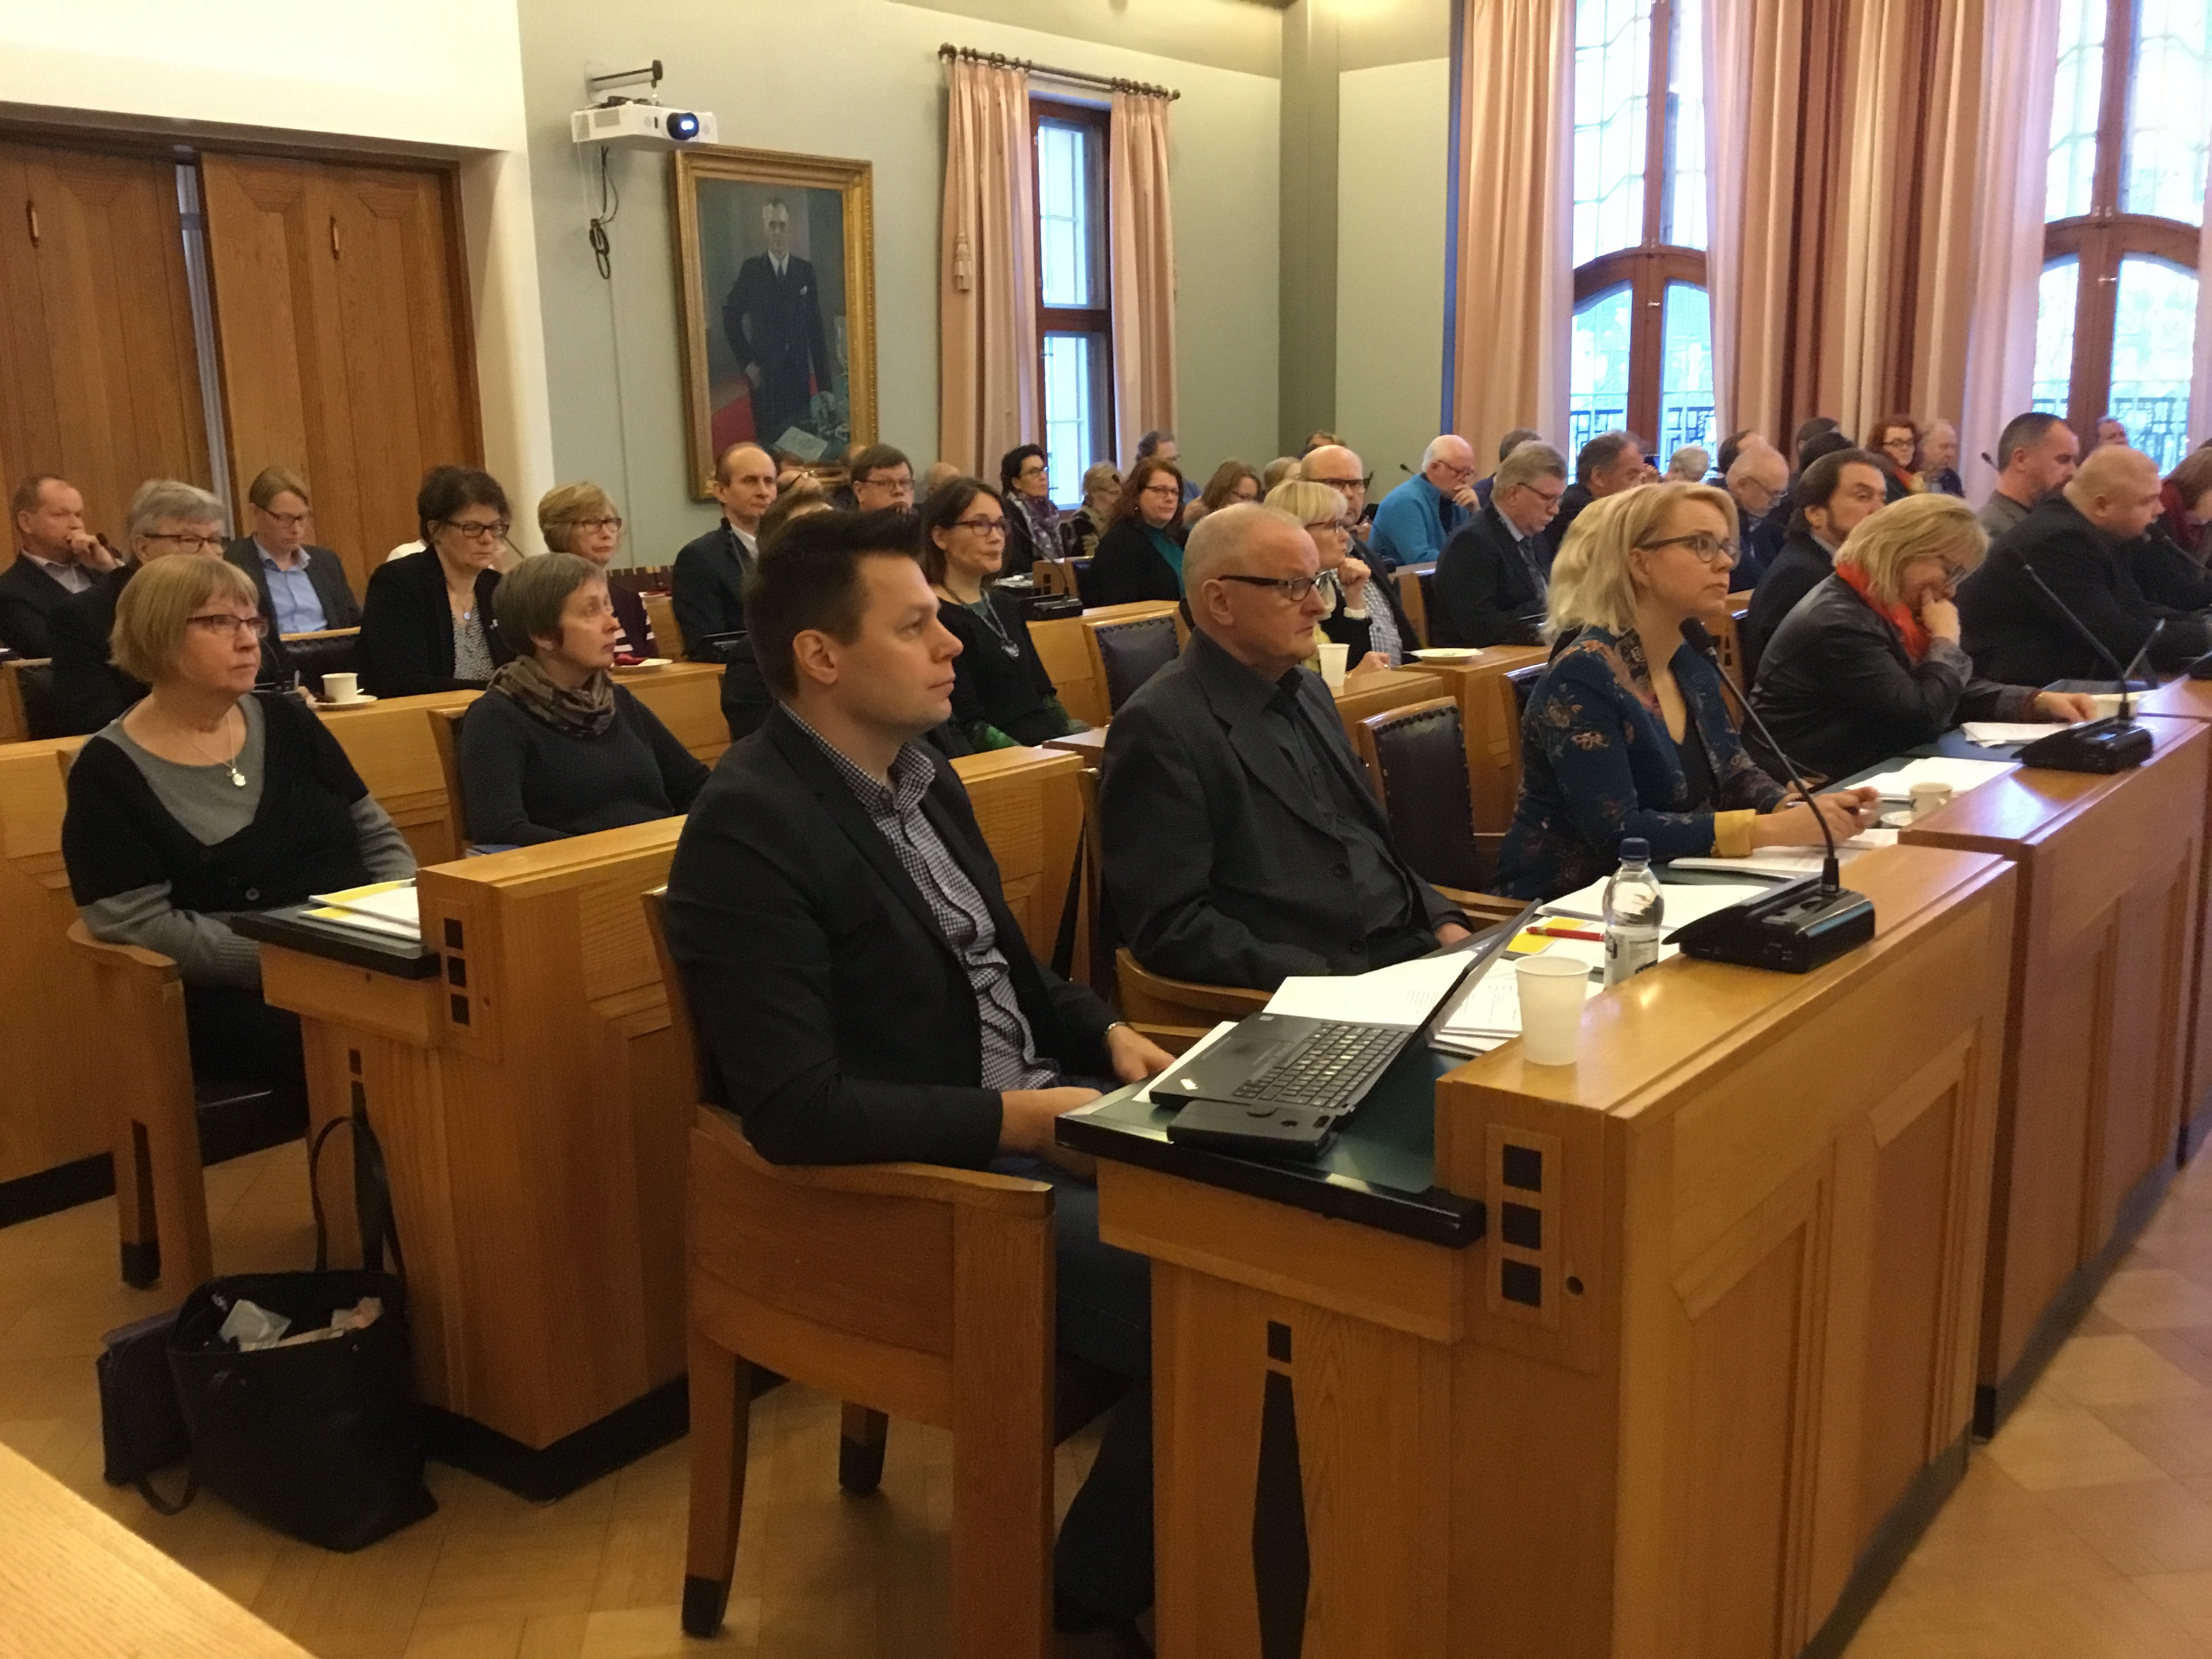 Etelä-Savon maakuntavaltuusto kokoontui 26.11.2018 Mikkelin kaupungintalolle talousarviokokoukseen. Maakuntavaltuusto hyväksyi Etelä-Savon maakuntaliiton talous- ja toimintasuunnitelman vuosille 2019-2021 sekä talousarvion vuodelle 2019.